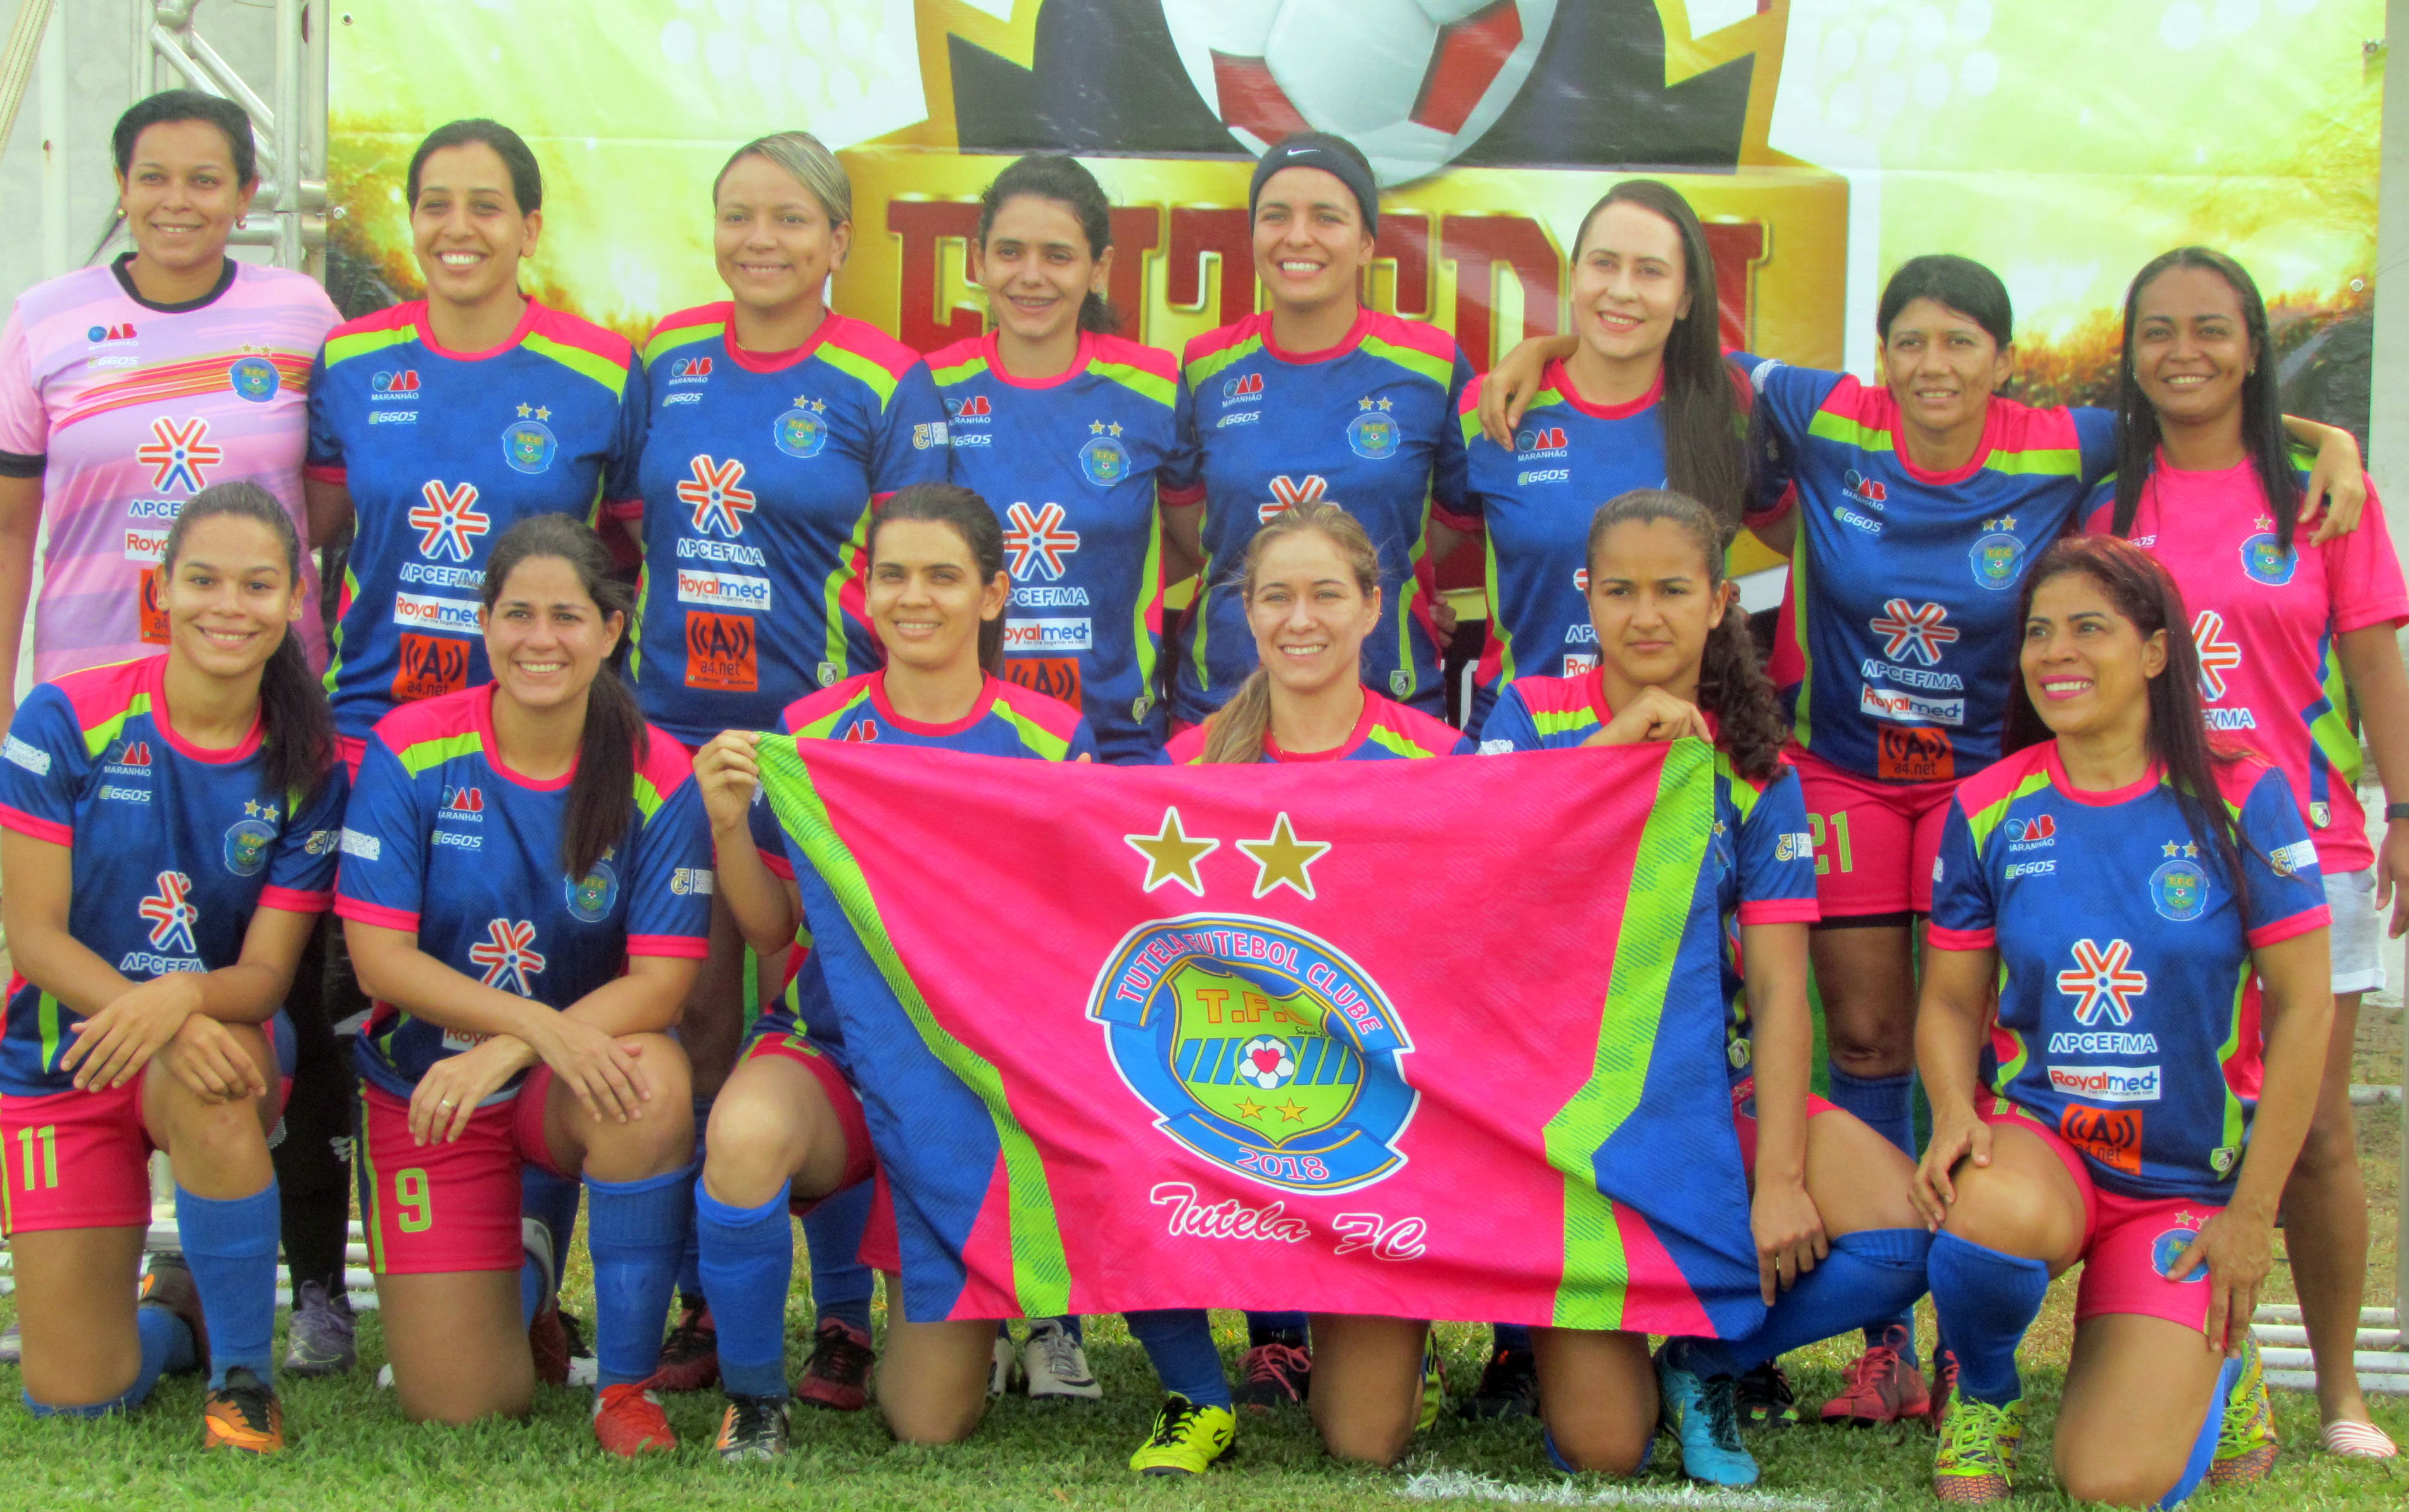 TUTELA FC TRICAMPEÃ, A TRADIÇÃO PERMANECE (OAB-FEMININO)